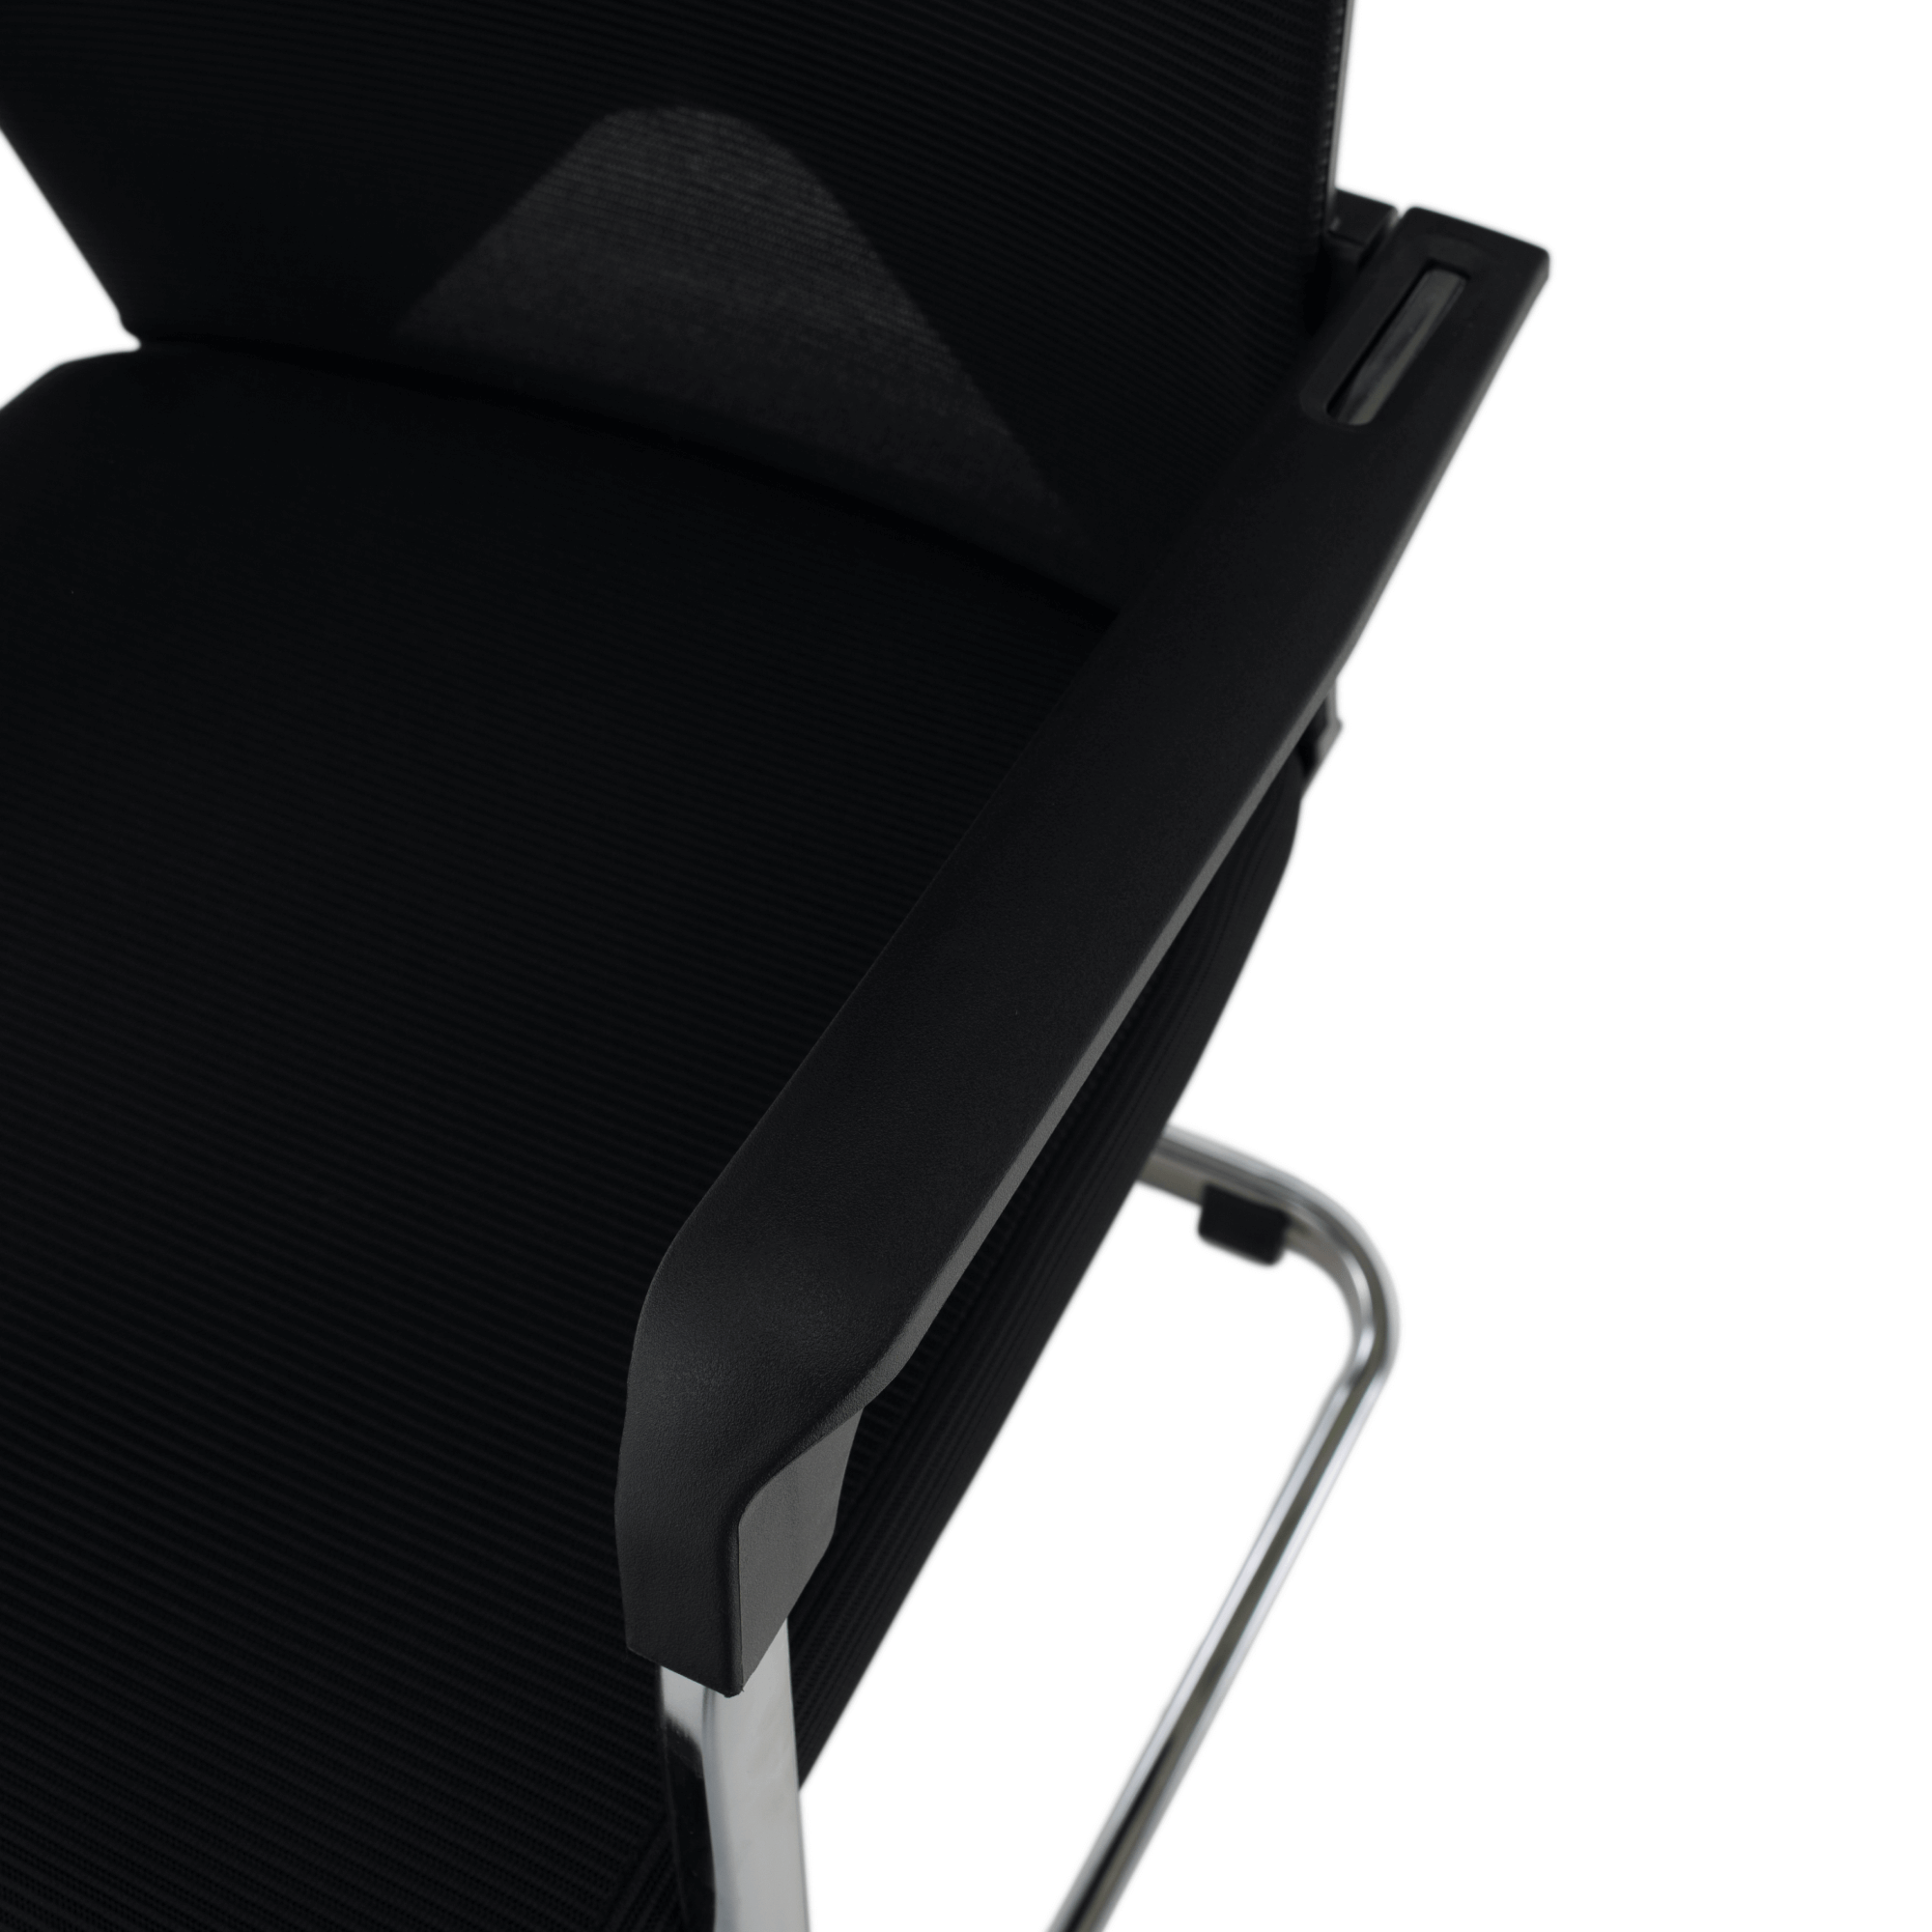 Zasedací židle, černá, RAVIL